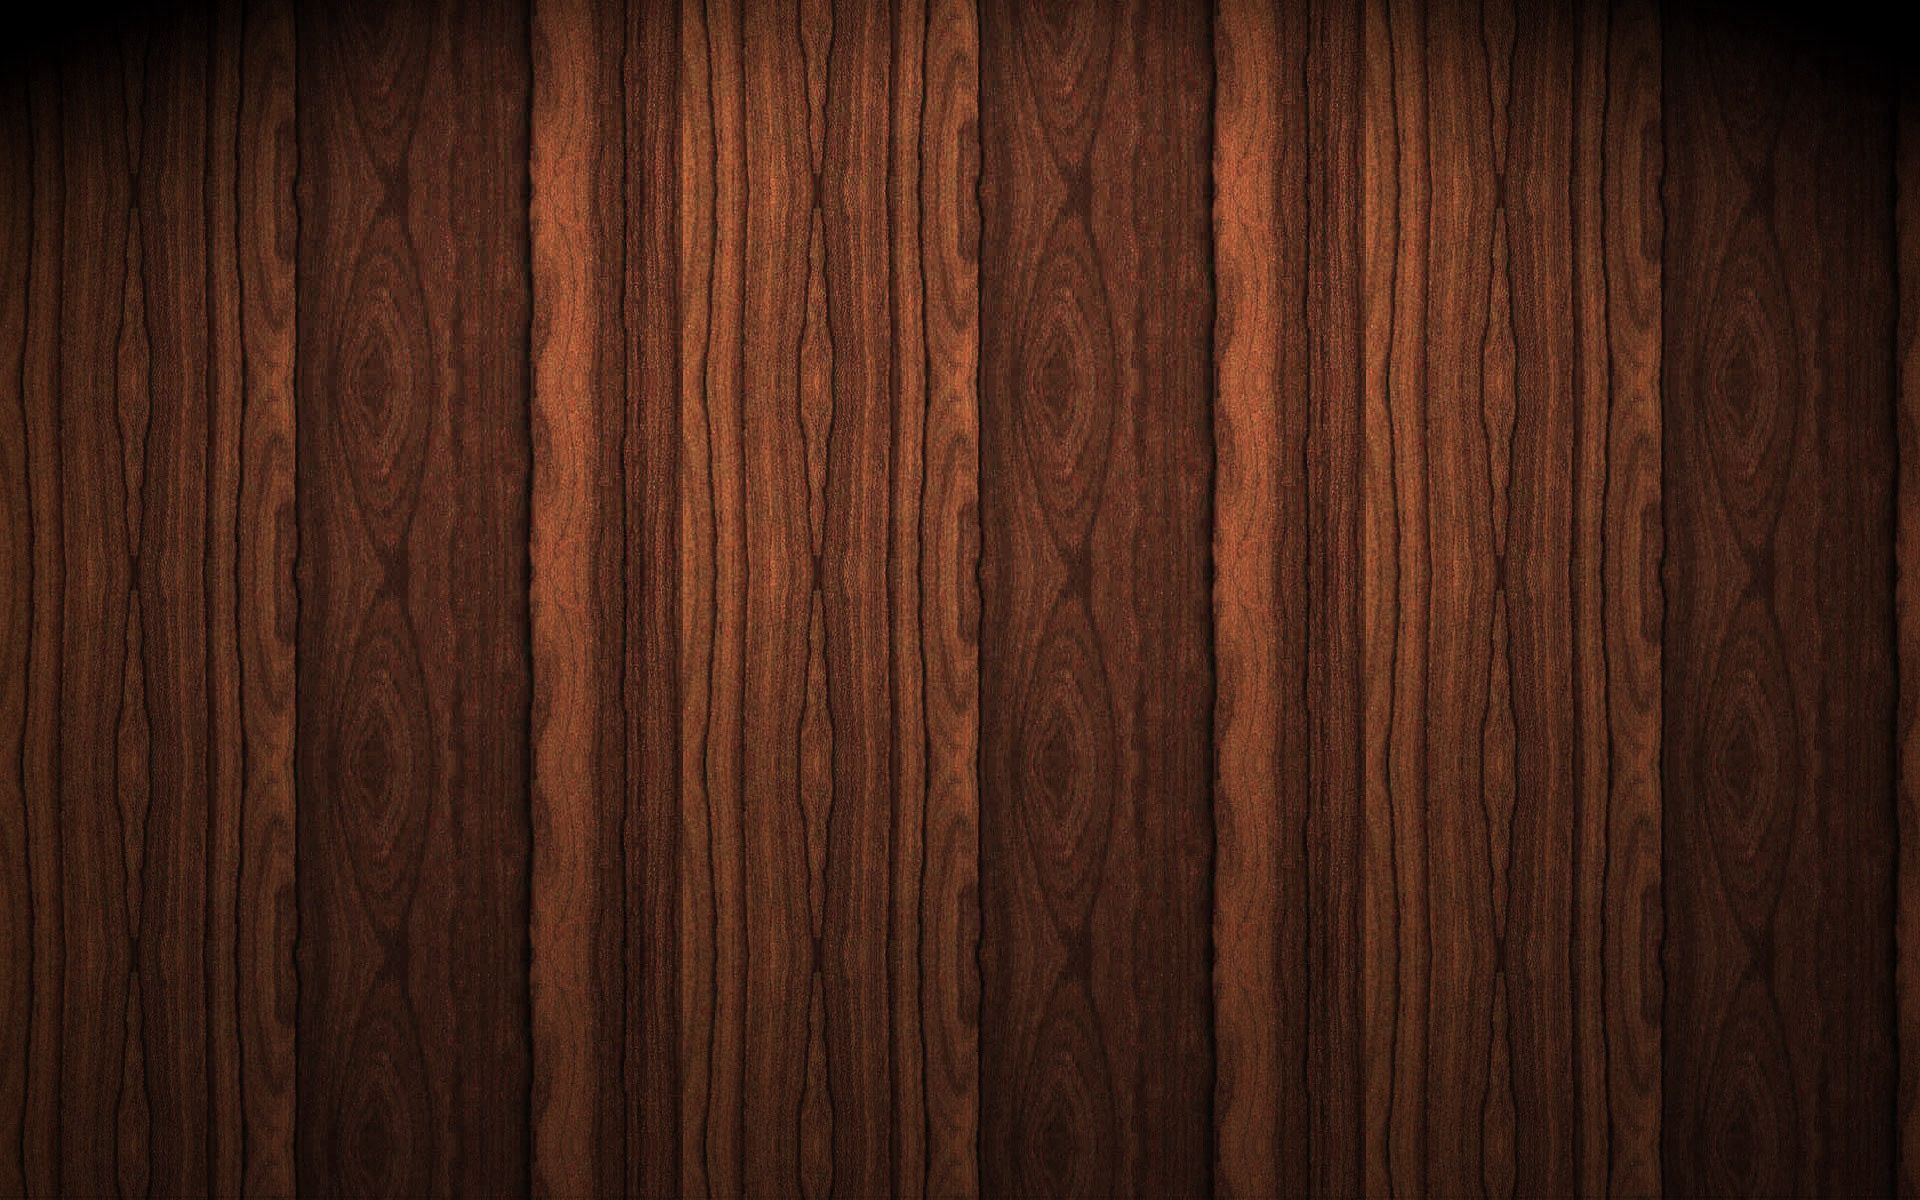 8k Wooden Background